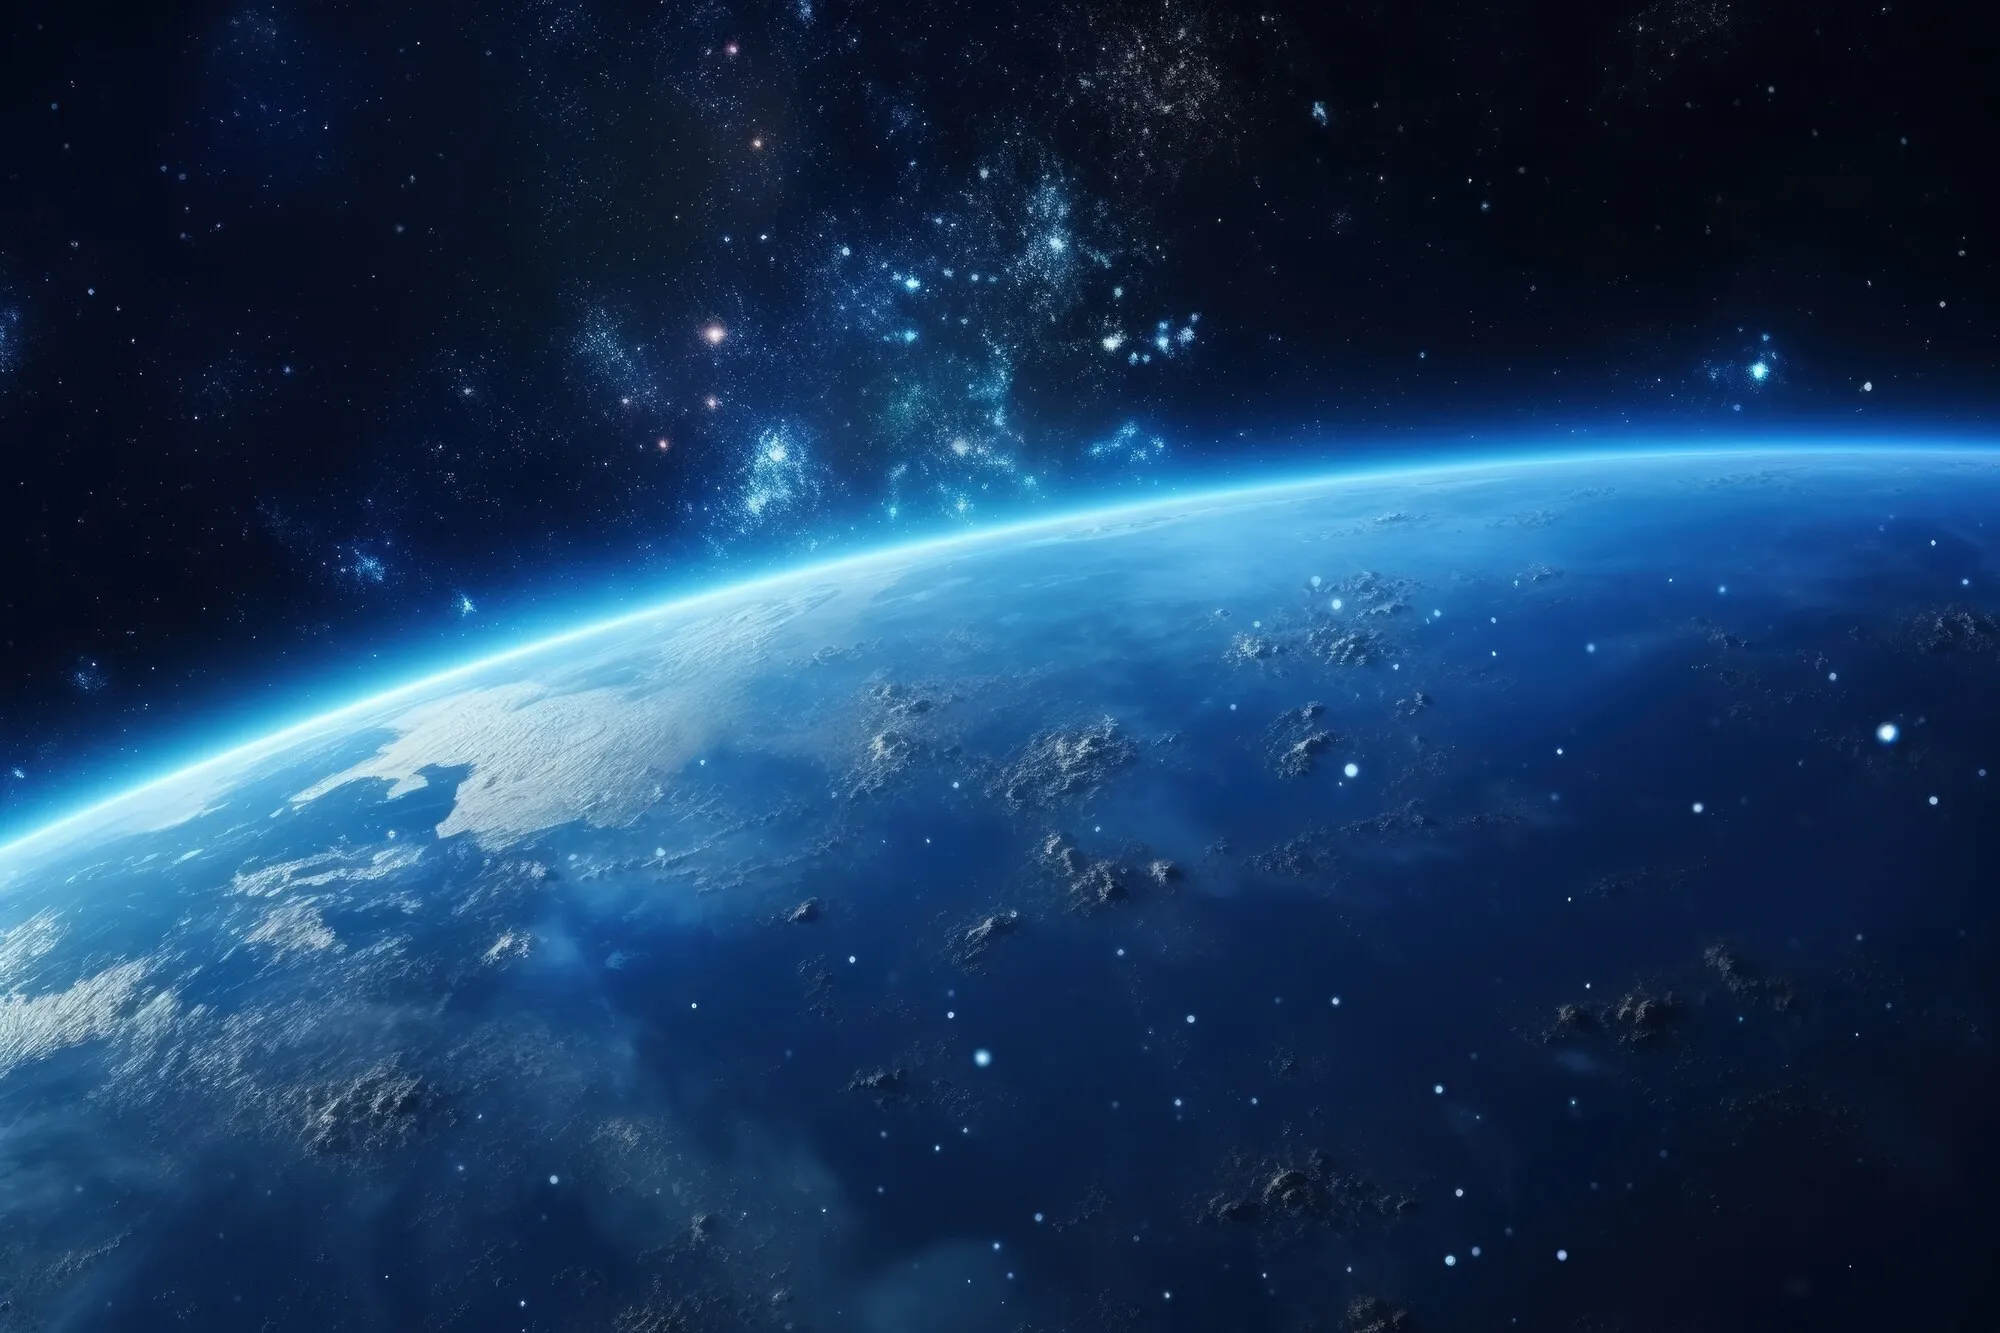 "Ничем не угрожает": Учёный успокоил землян из-за приближающегося "астероида-убийцы"